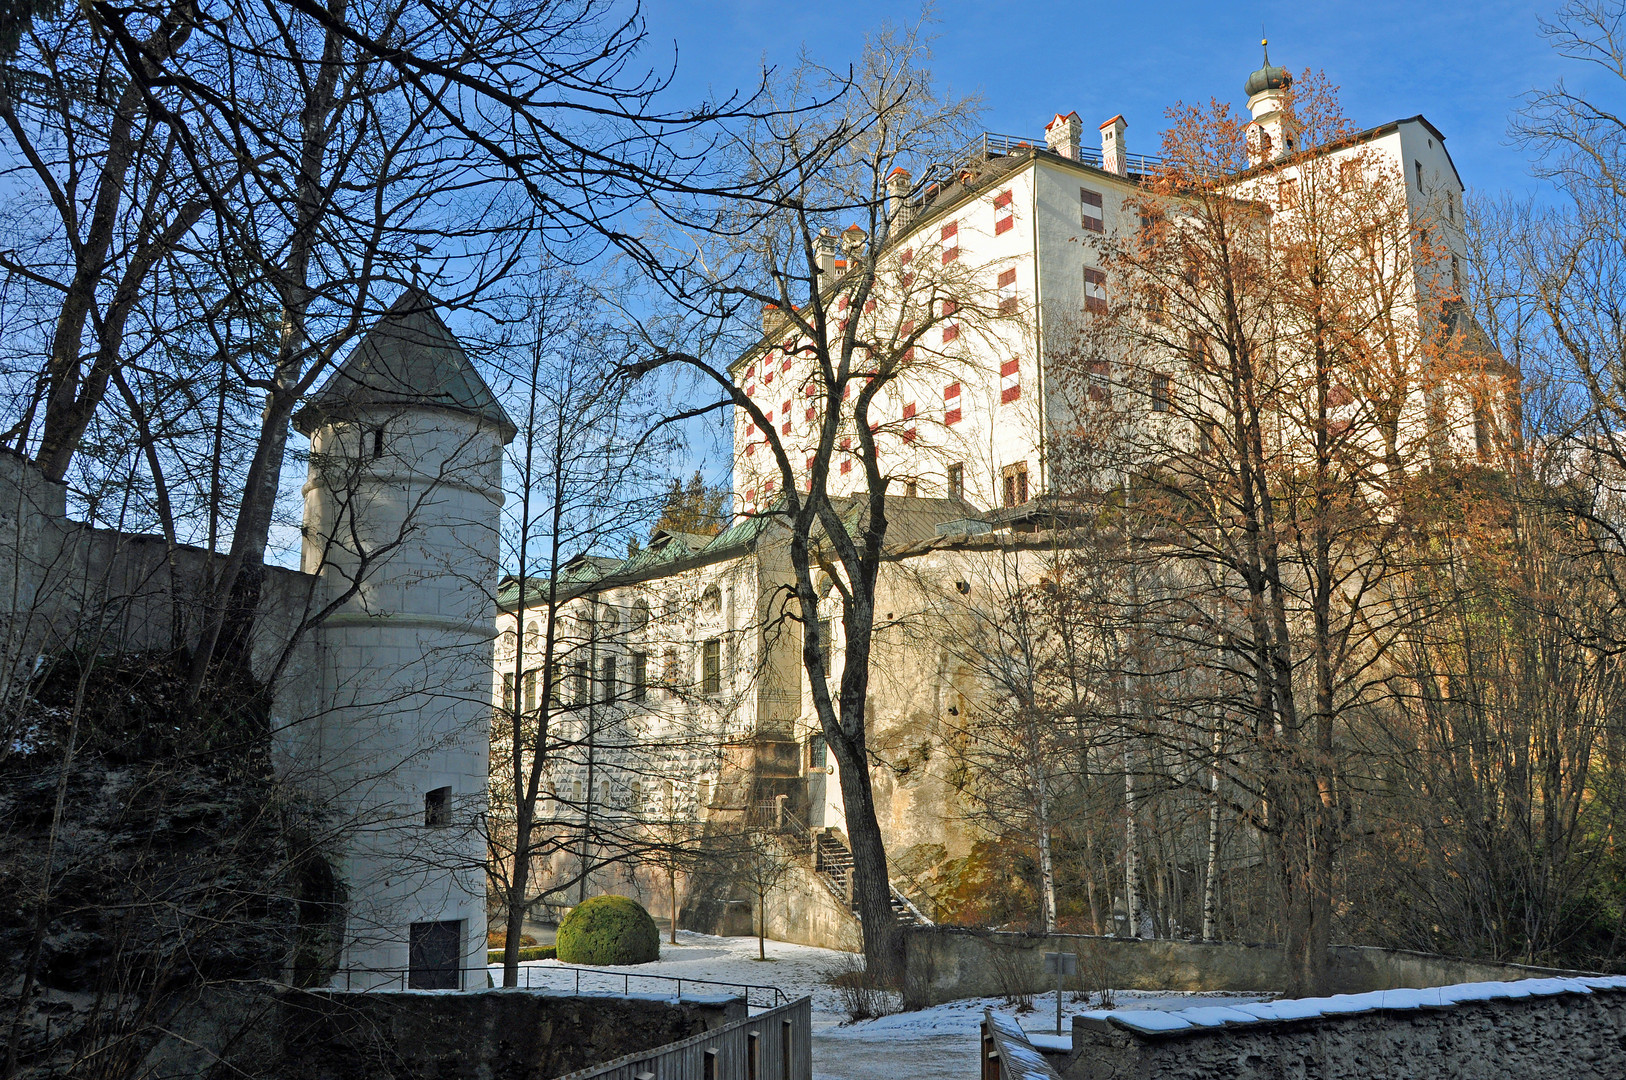 Schloss Amras bei Innsbruck